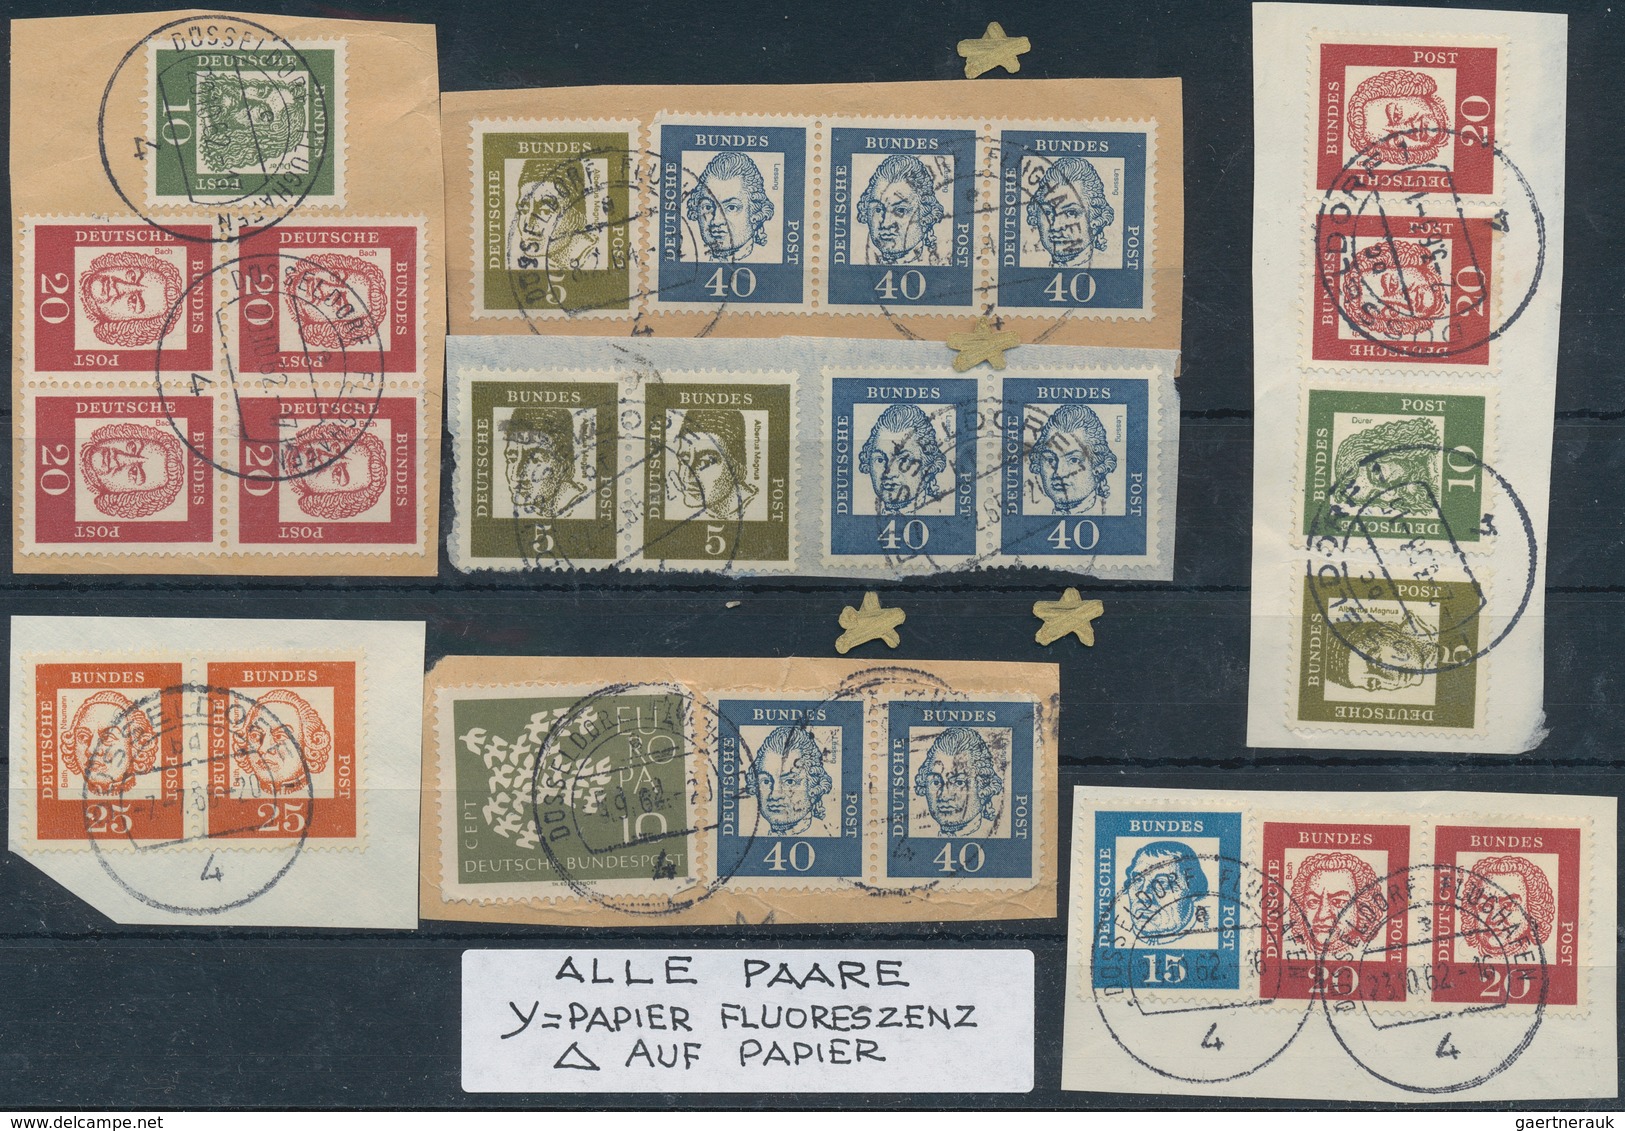 31062 Deutschland: 1900/1980 (ca.), kontroverse und urige Partie auf fast 100 Steckkarten, teils unterschi